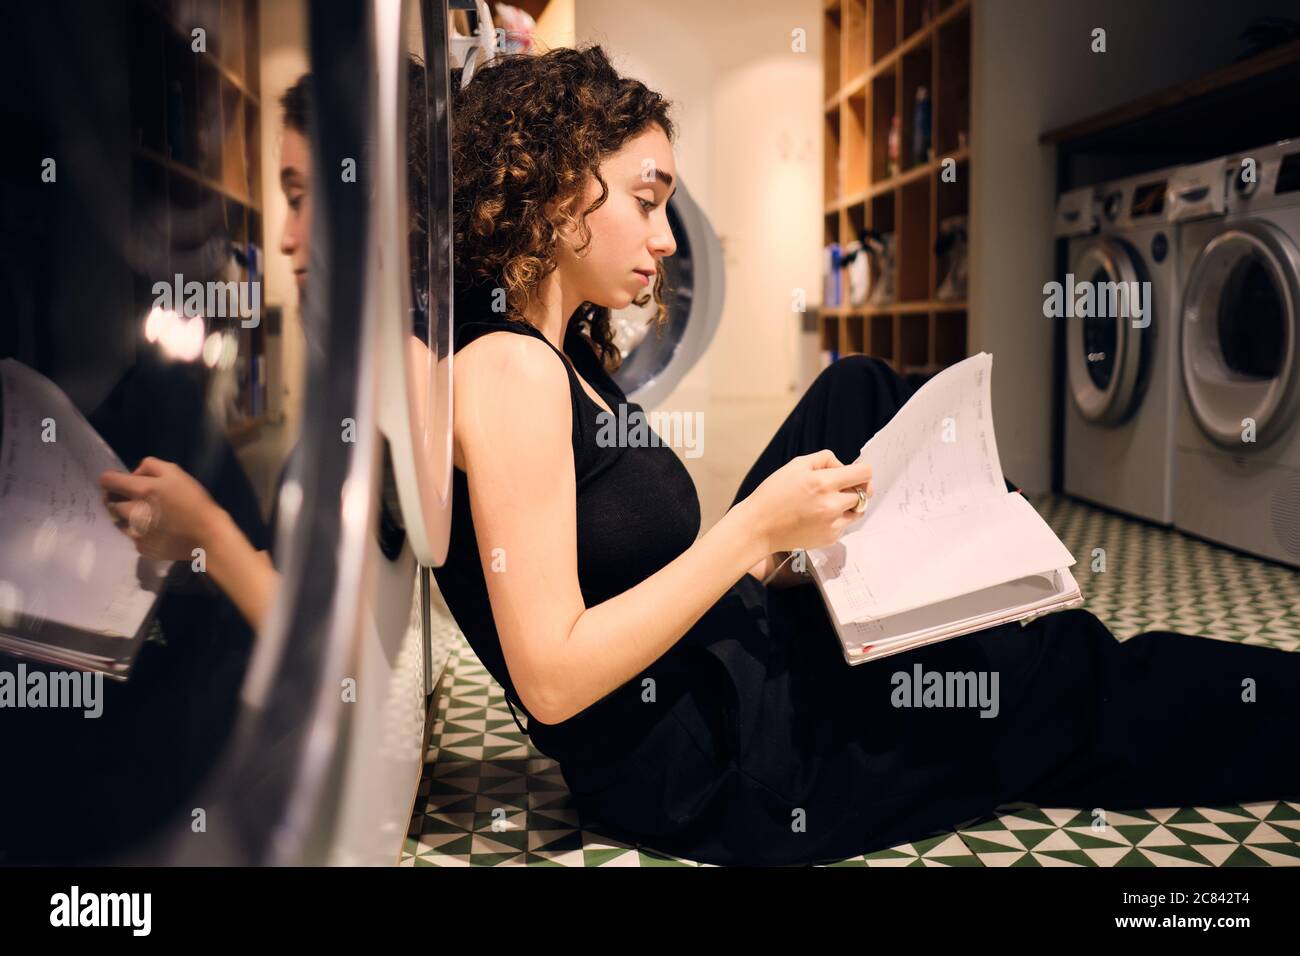 Vue latérale de la fille de brunette lecture de livres en attente de lavage au sol dans la blanchisserie moderne en libre-service Banque D'Images